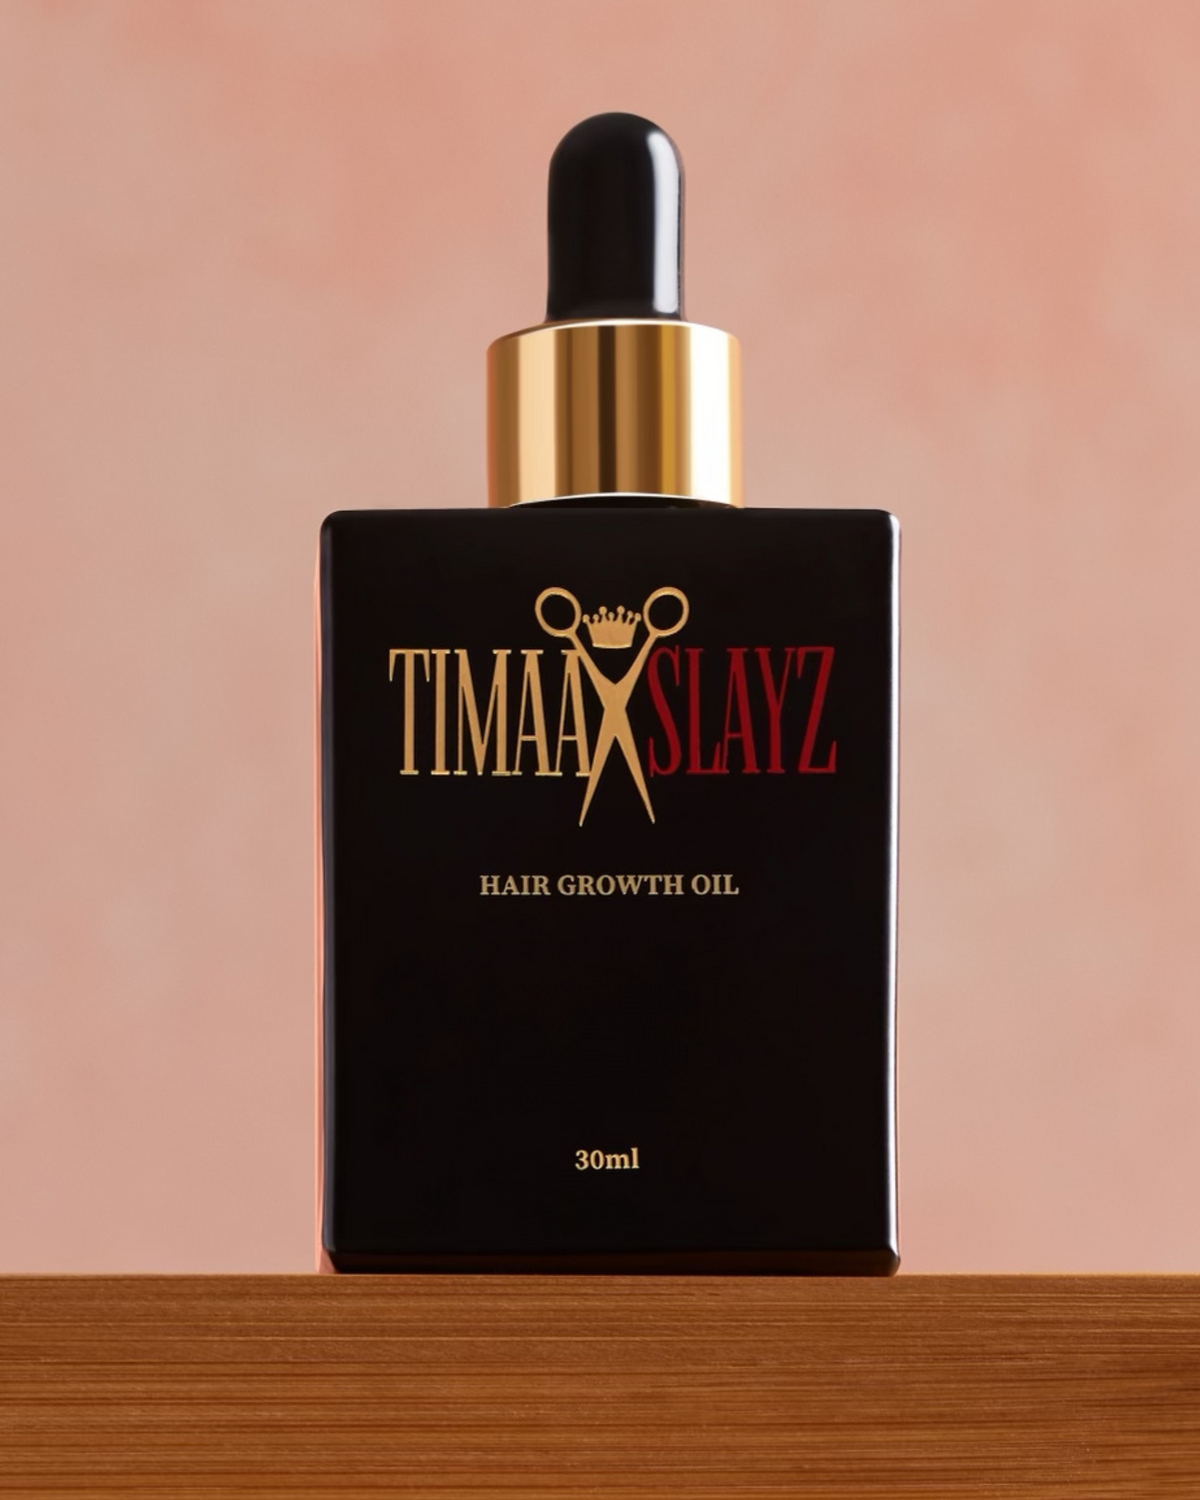 Timaaslayz Hair Growth Oil 30ml